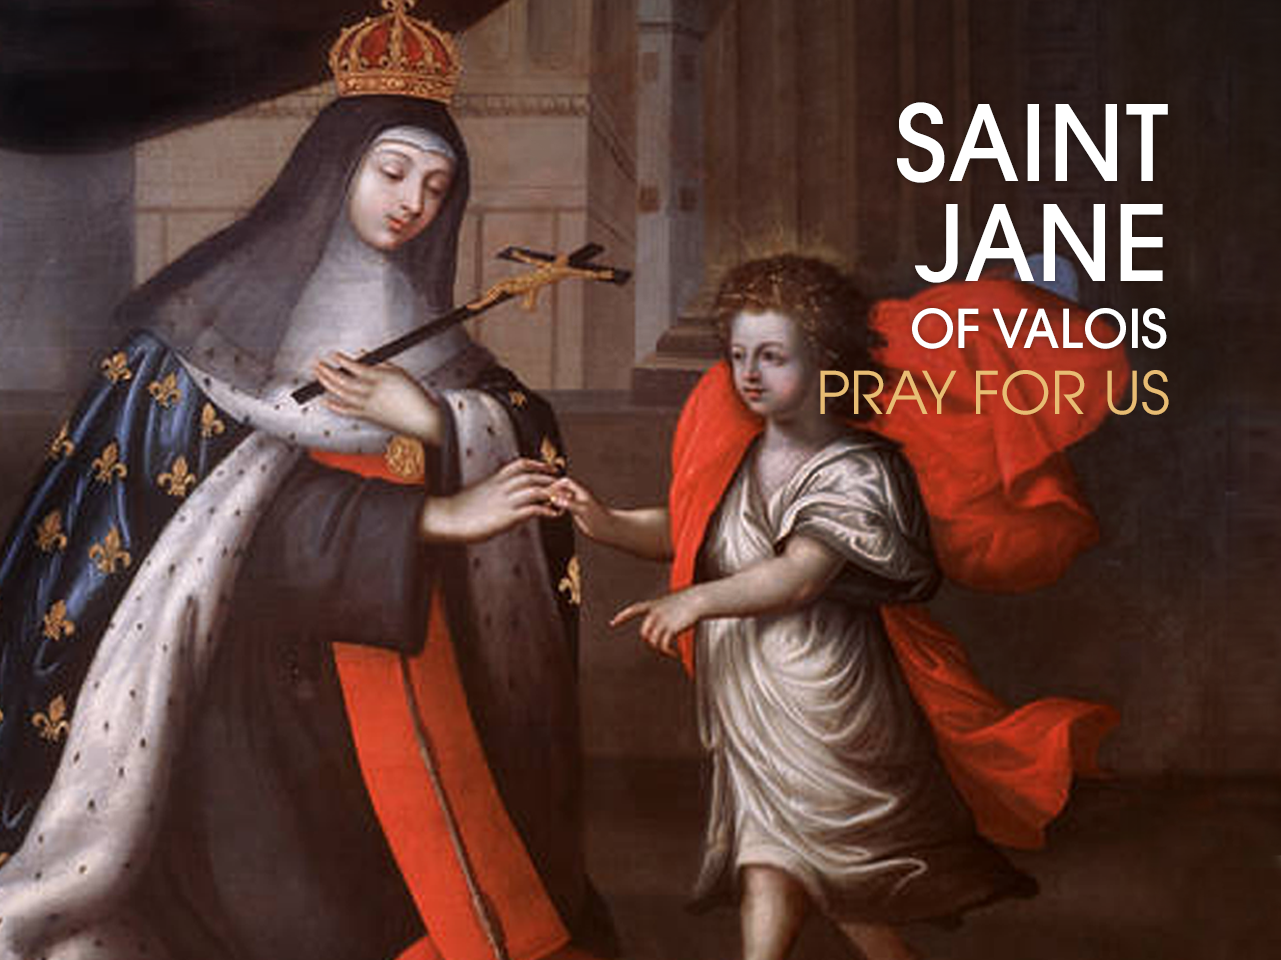 St. Jane of Valois